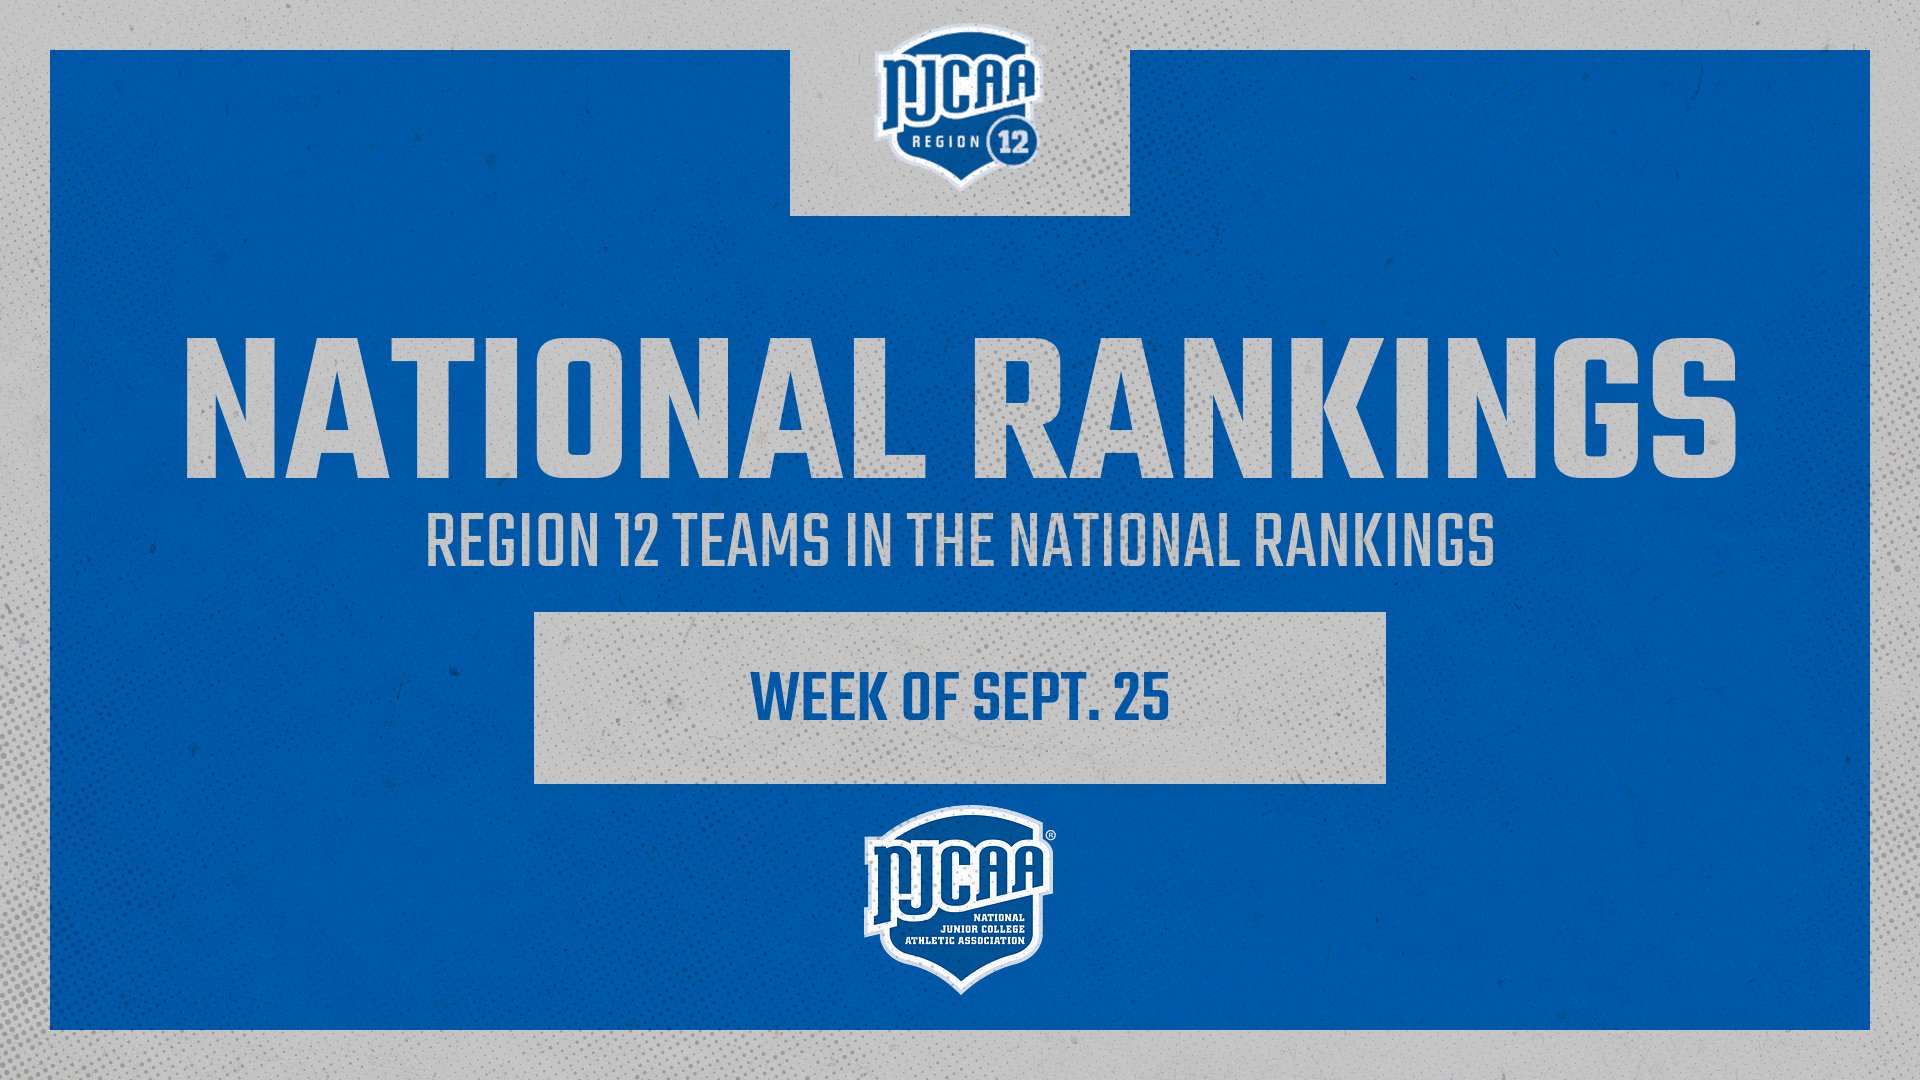 Nationally Ranked Region 12 Teams - Week of Sept. 25